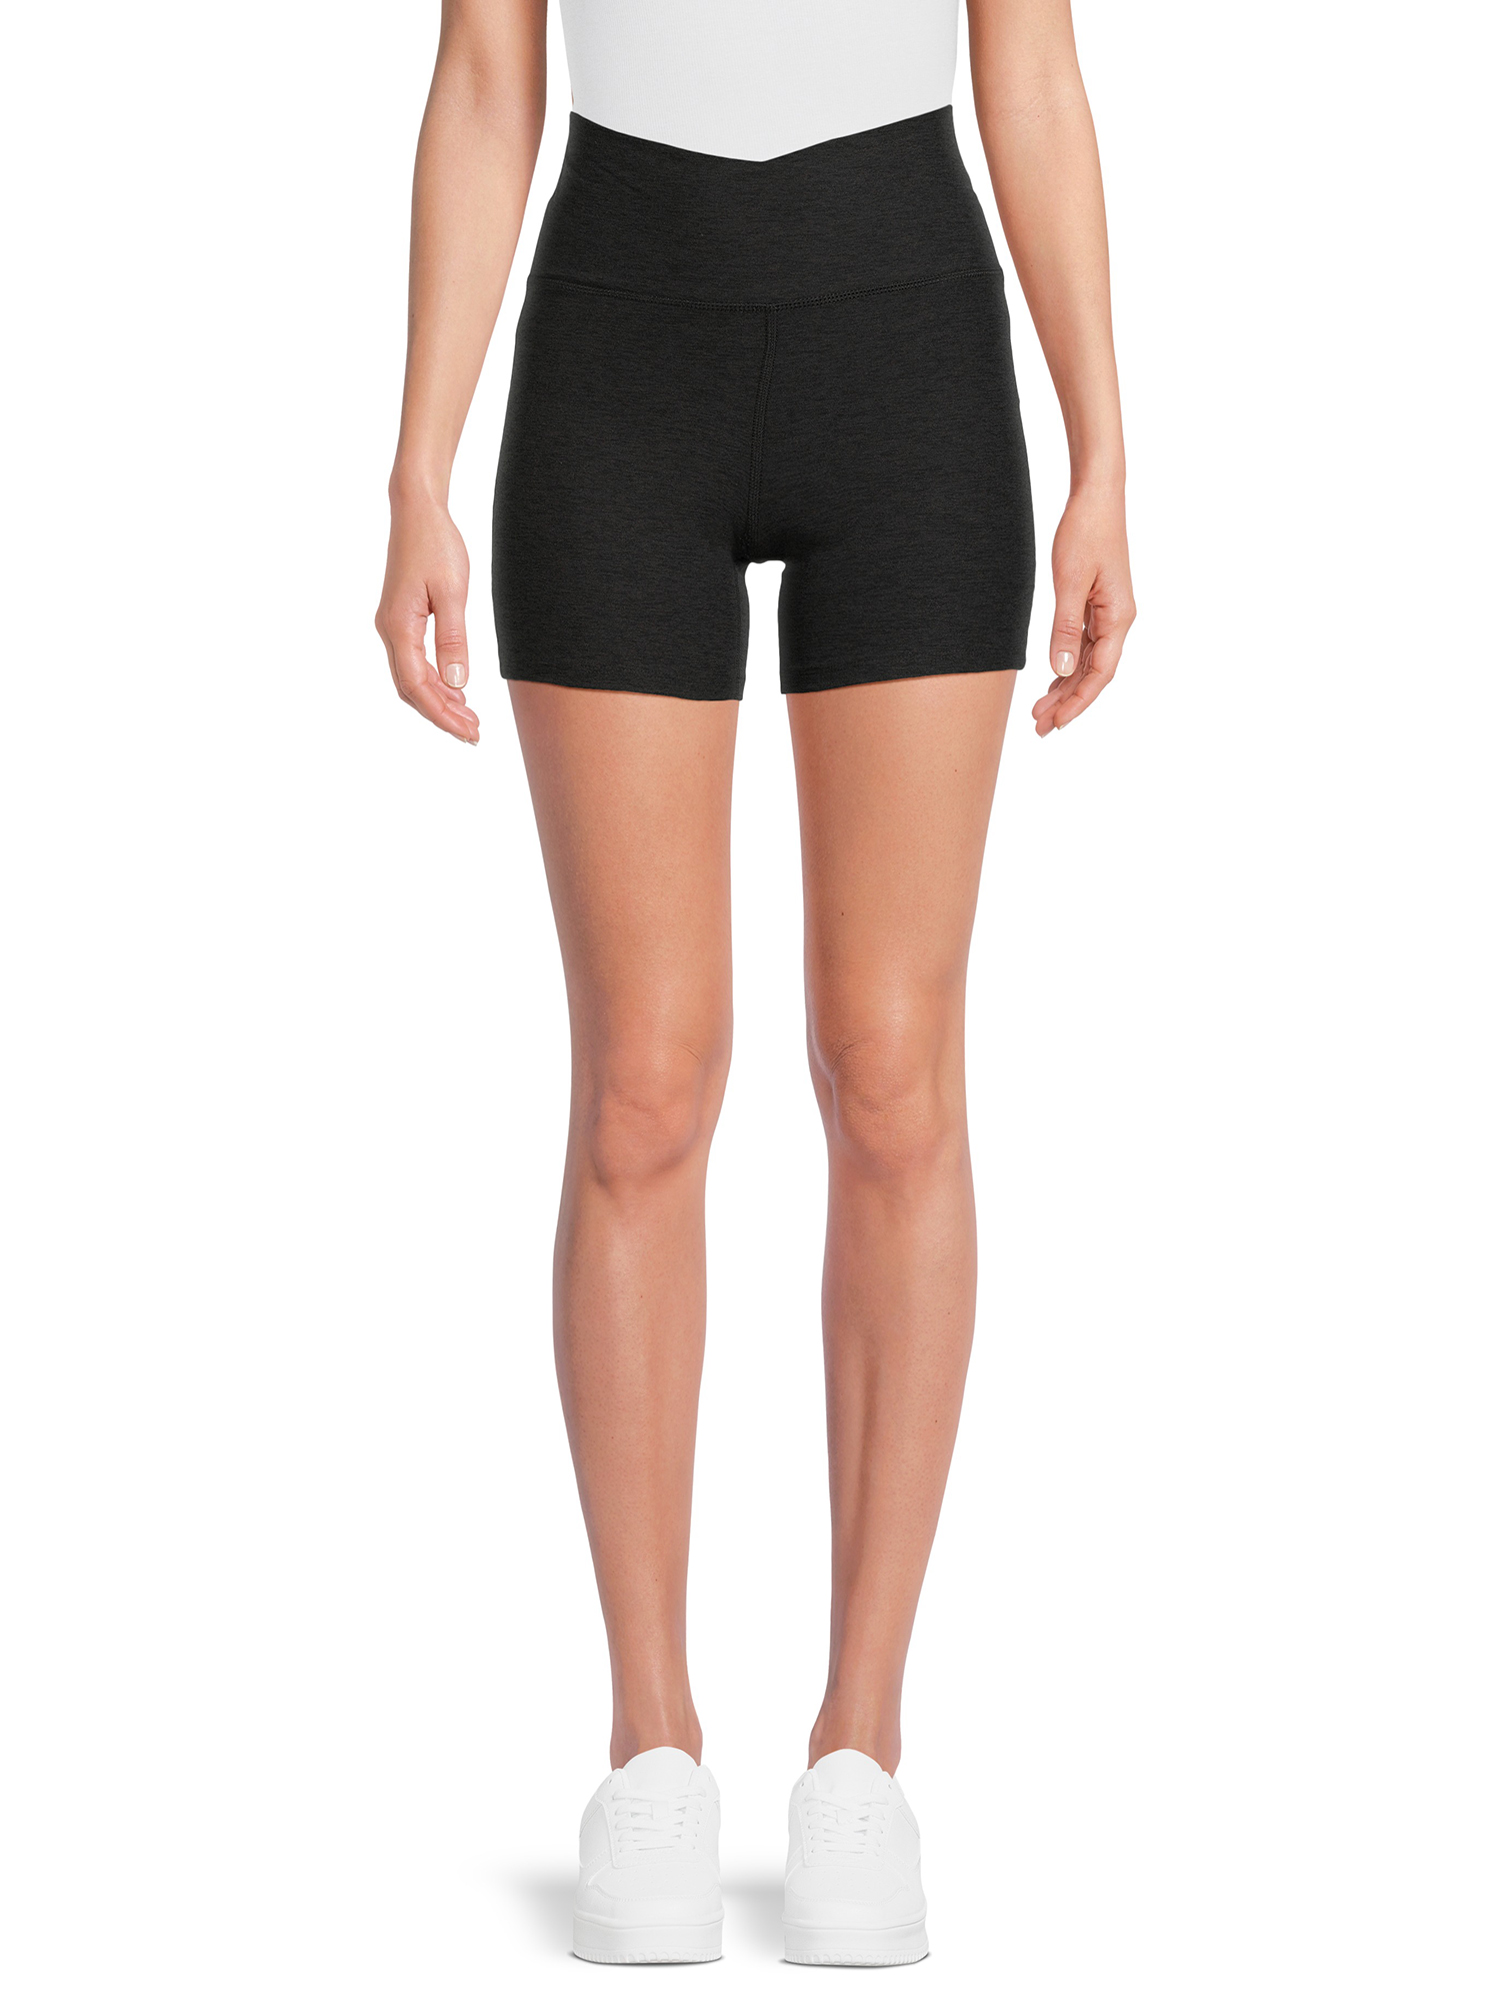 Athletic Works Women's Bike Shorts, 5 inch Inseam, Sizes Xs-xxxl, Black